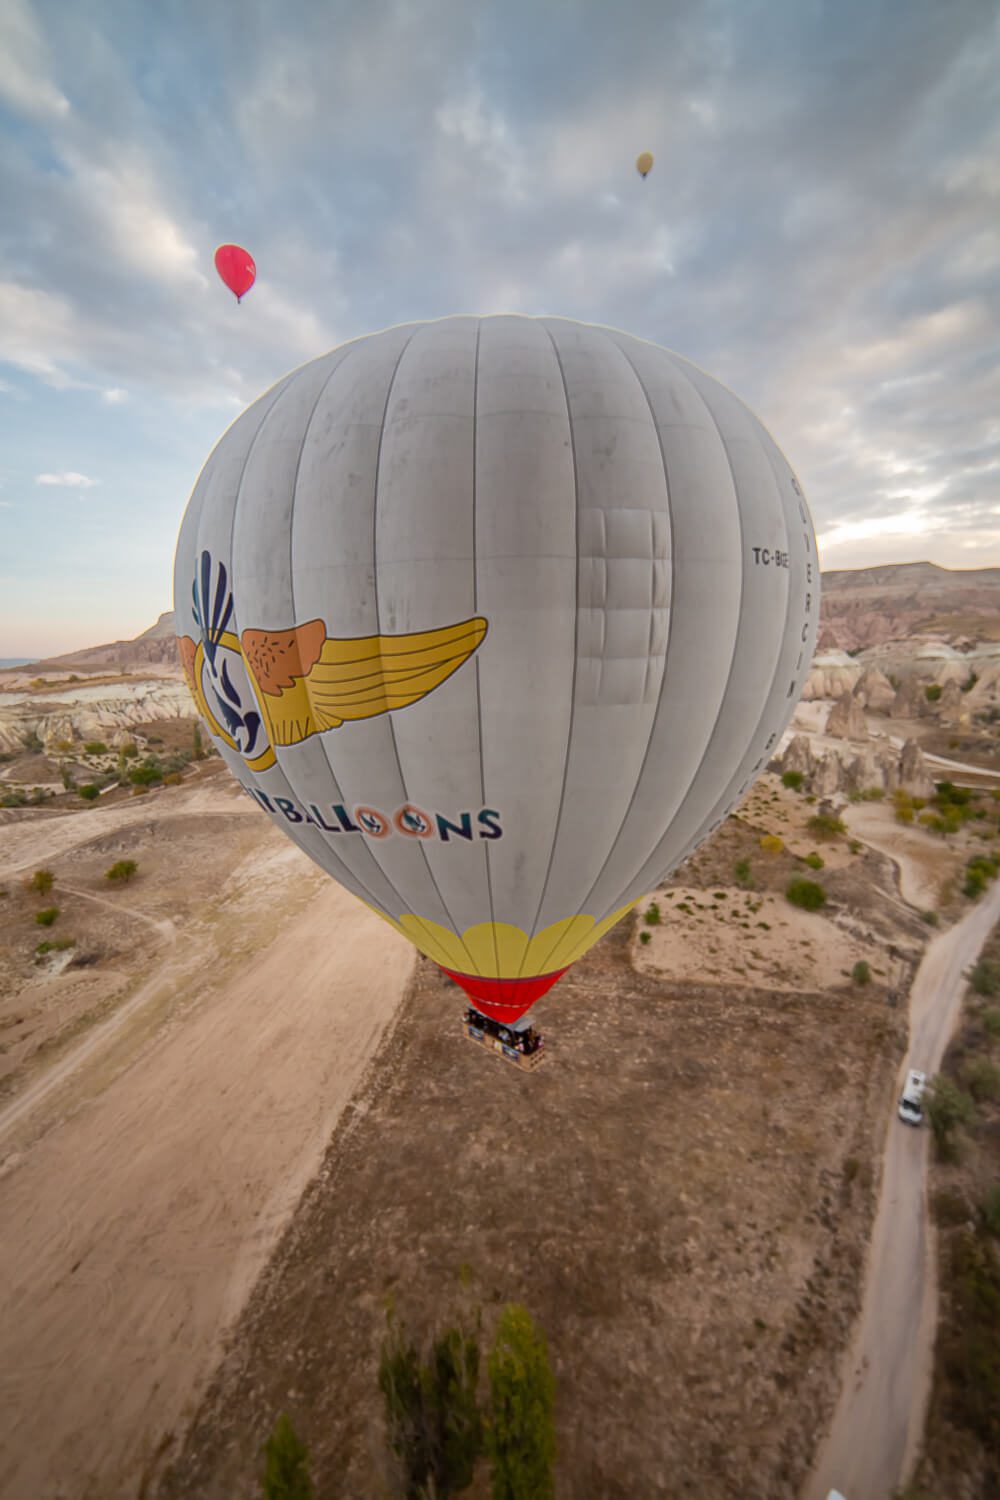 Riding a hot air balloon in Turkey<br>
